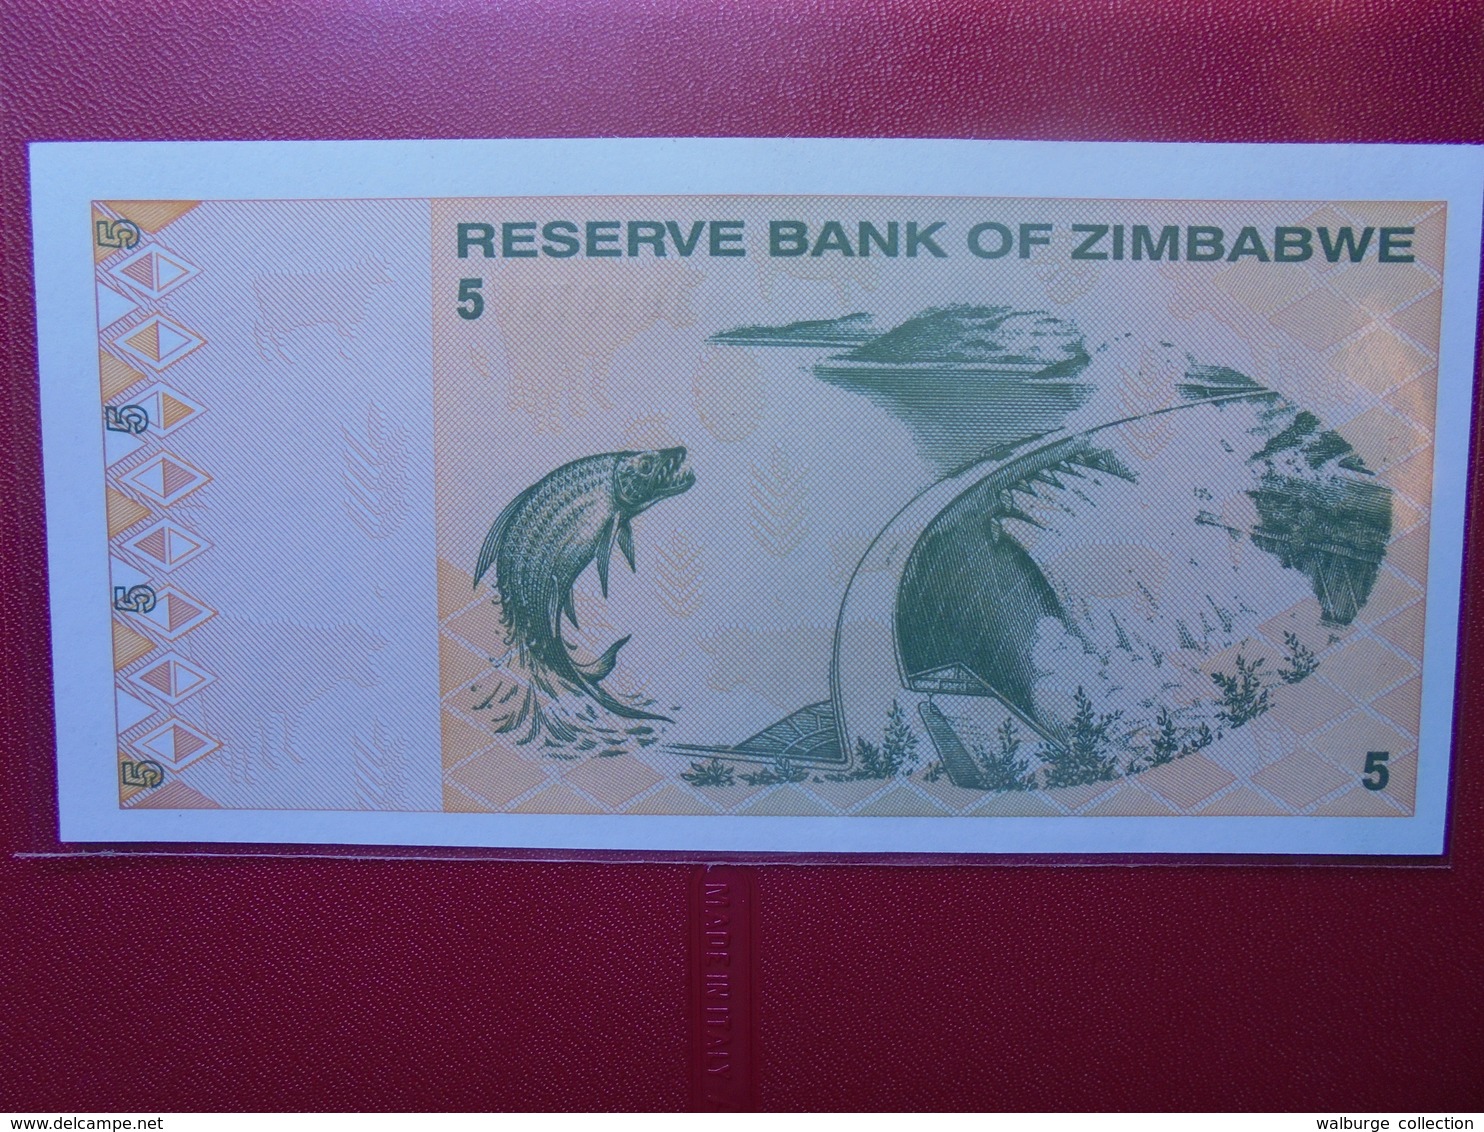 ZIMBABWE 5 $ 2009 PEU CIRCULER/NEUF - Zimbabwe